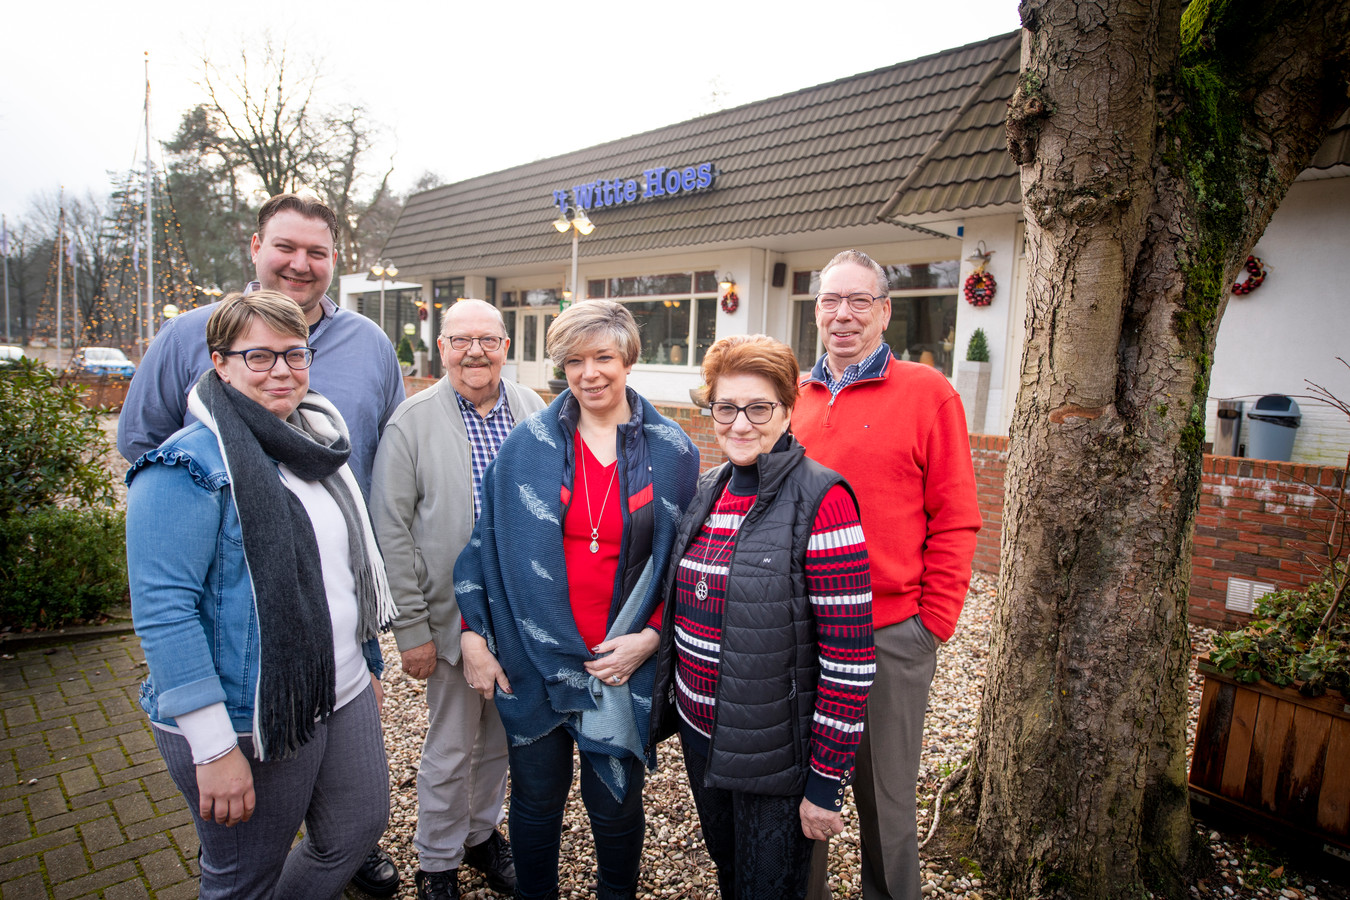 Discreet hoekpunt onderschrift Familie Hogenboom-Gorter van 't Witte Hoes bij Rijssen verknocht aan plek:  'al onze herinneringen liggen in de zaak' | Foto | tubantia.nl